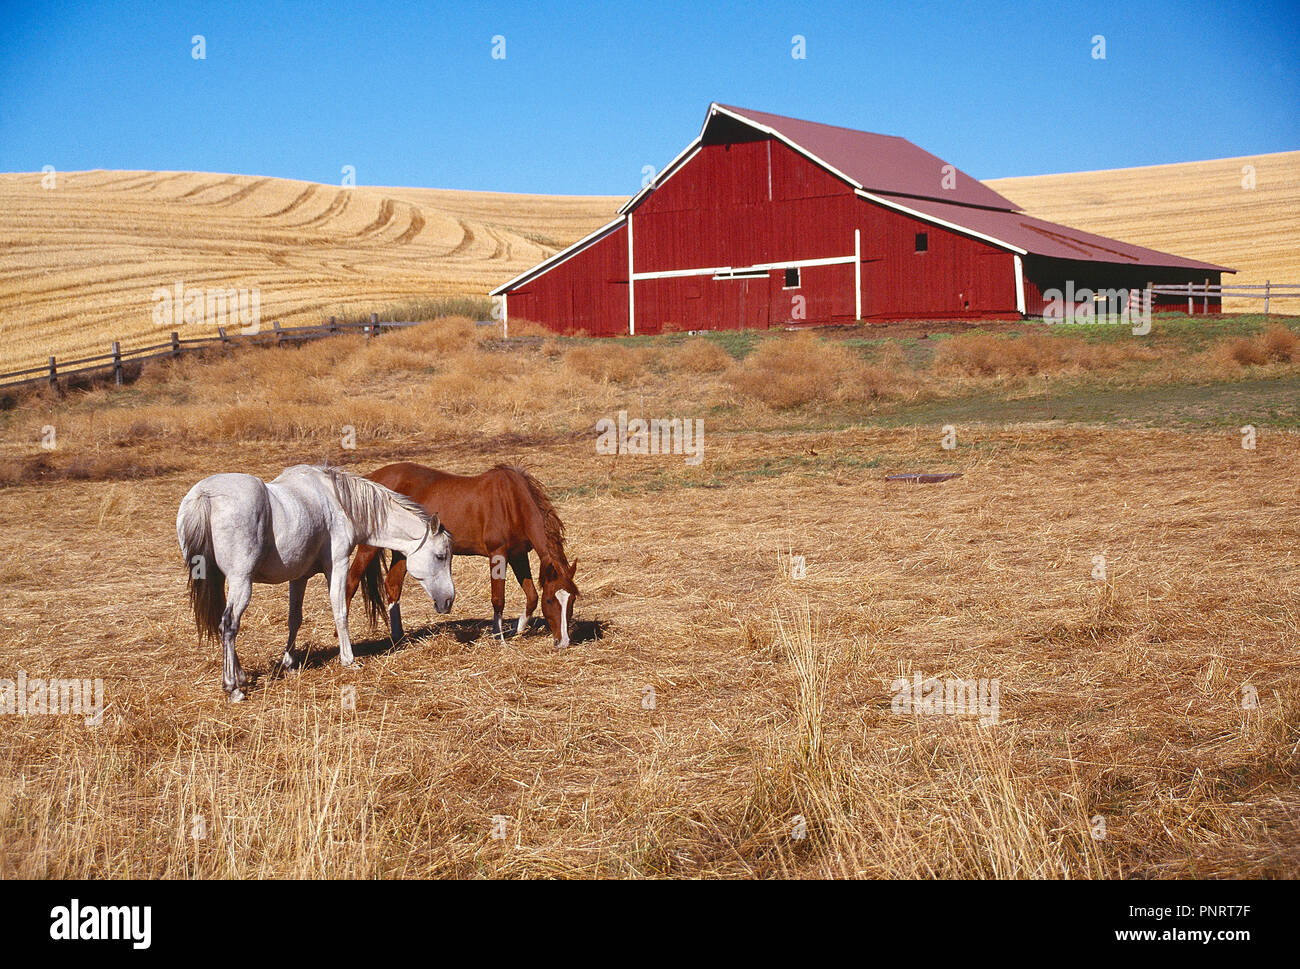 Stati Uniti d'America. La Contea di Washington. Rurale scena con fienile e cavallo al pascolo. Foto Stock